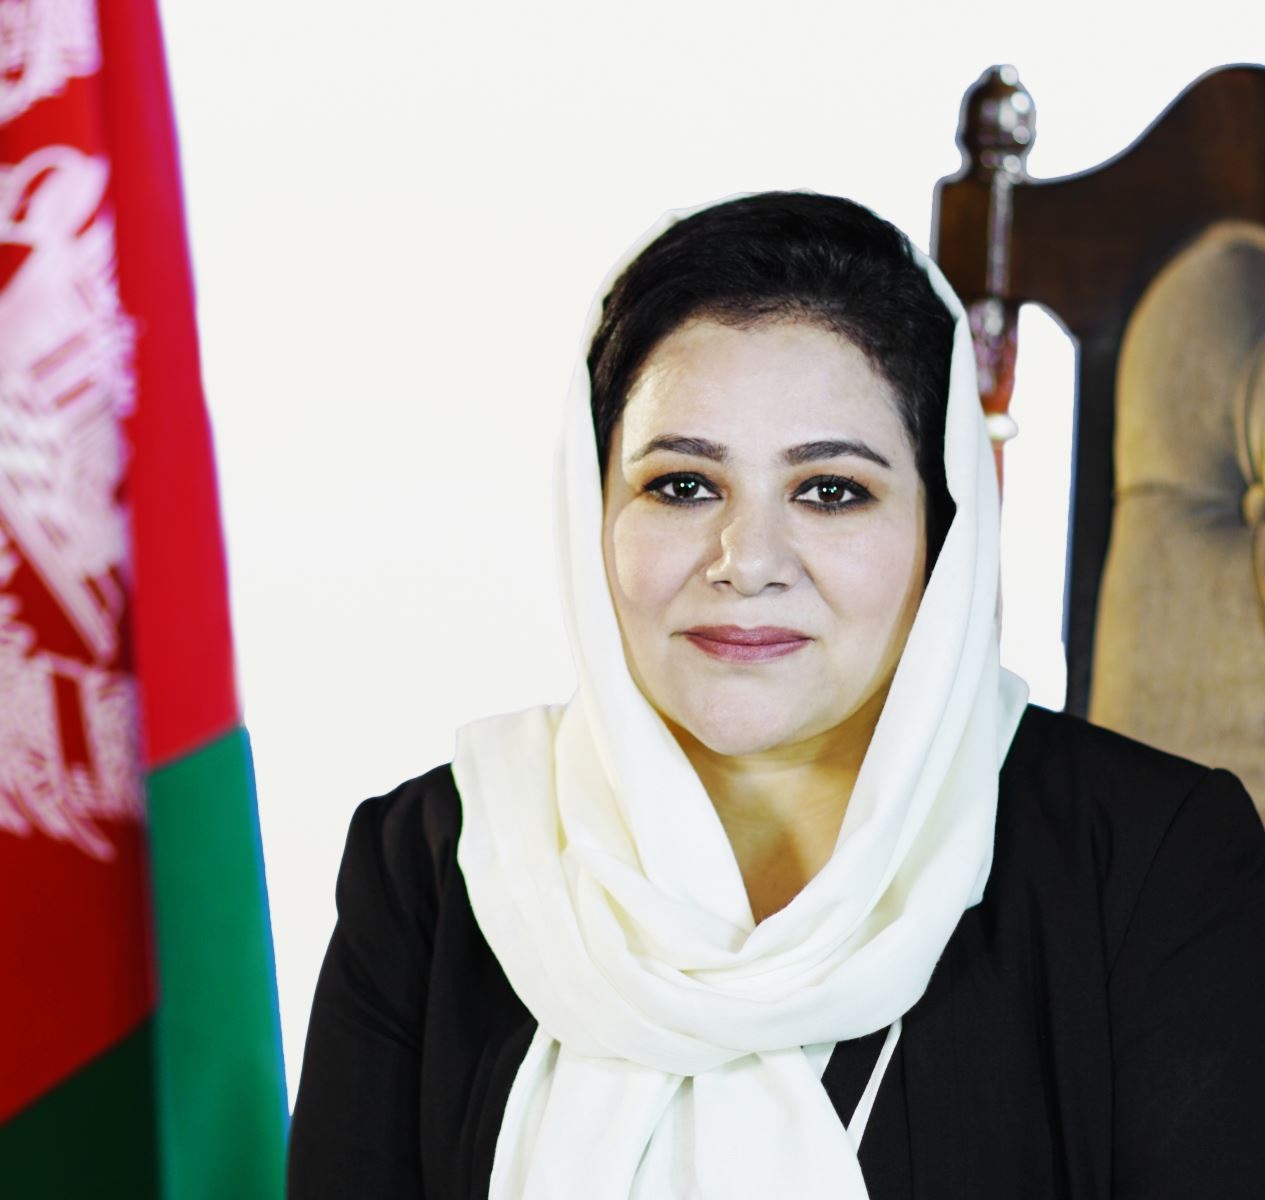 دعوت افغانستان از کشورهای دنیا برای سرمایه گذاری در بخش معادن این کشور/ ۱۴ فرصت جدید برای خارجی ها و ۴۳ مورد برای سرمایه گذاران داخلی تدارک دیده شده است